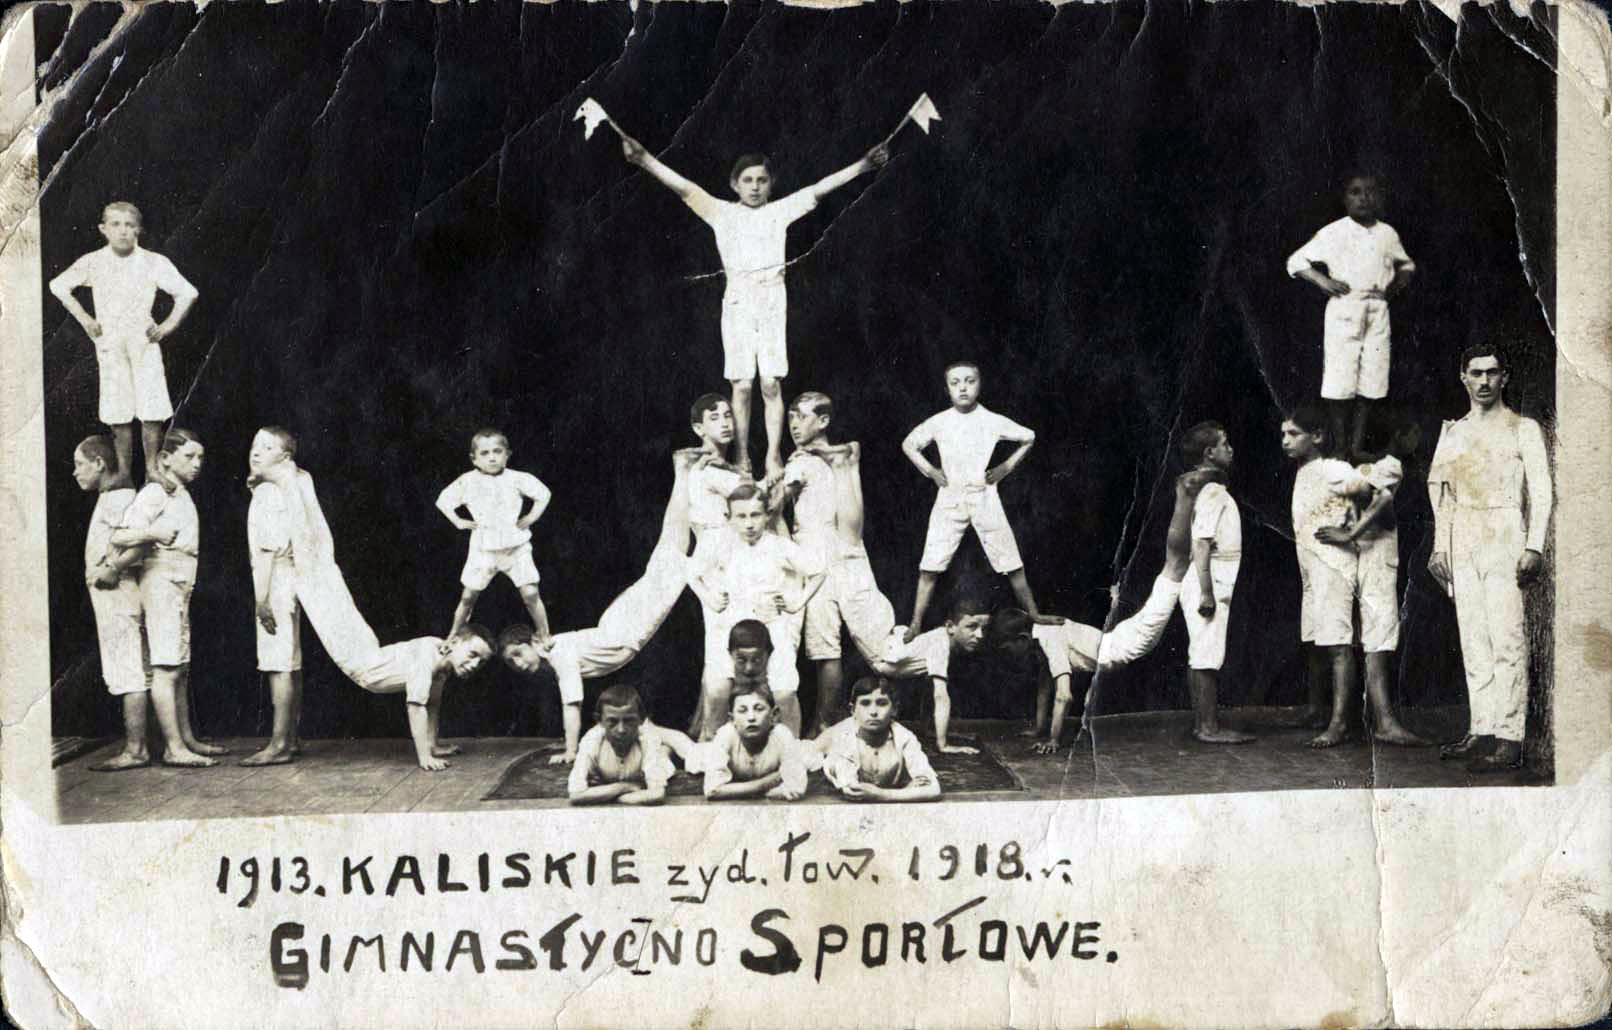 שיעור התעמלות במועדון ספורט יהודי בקאליש שבפולין, 1918